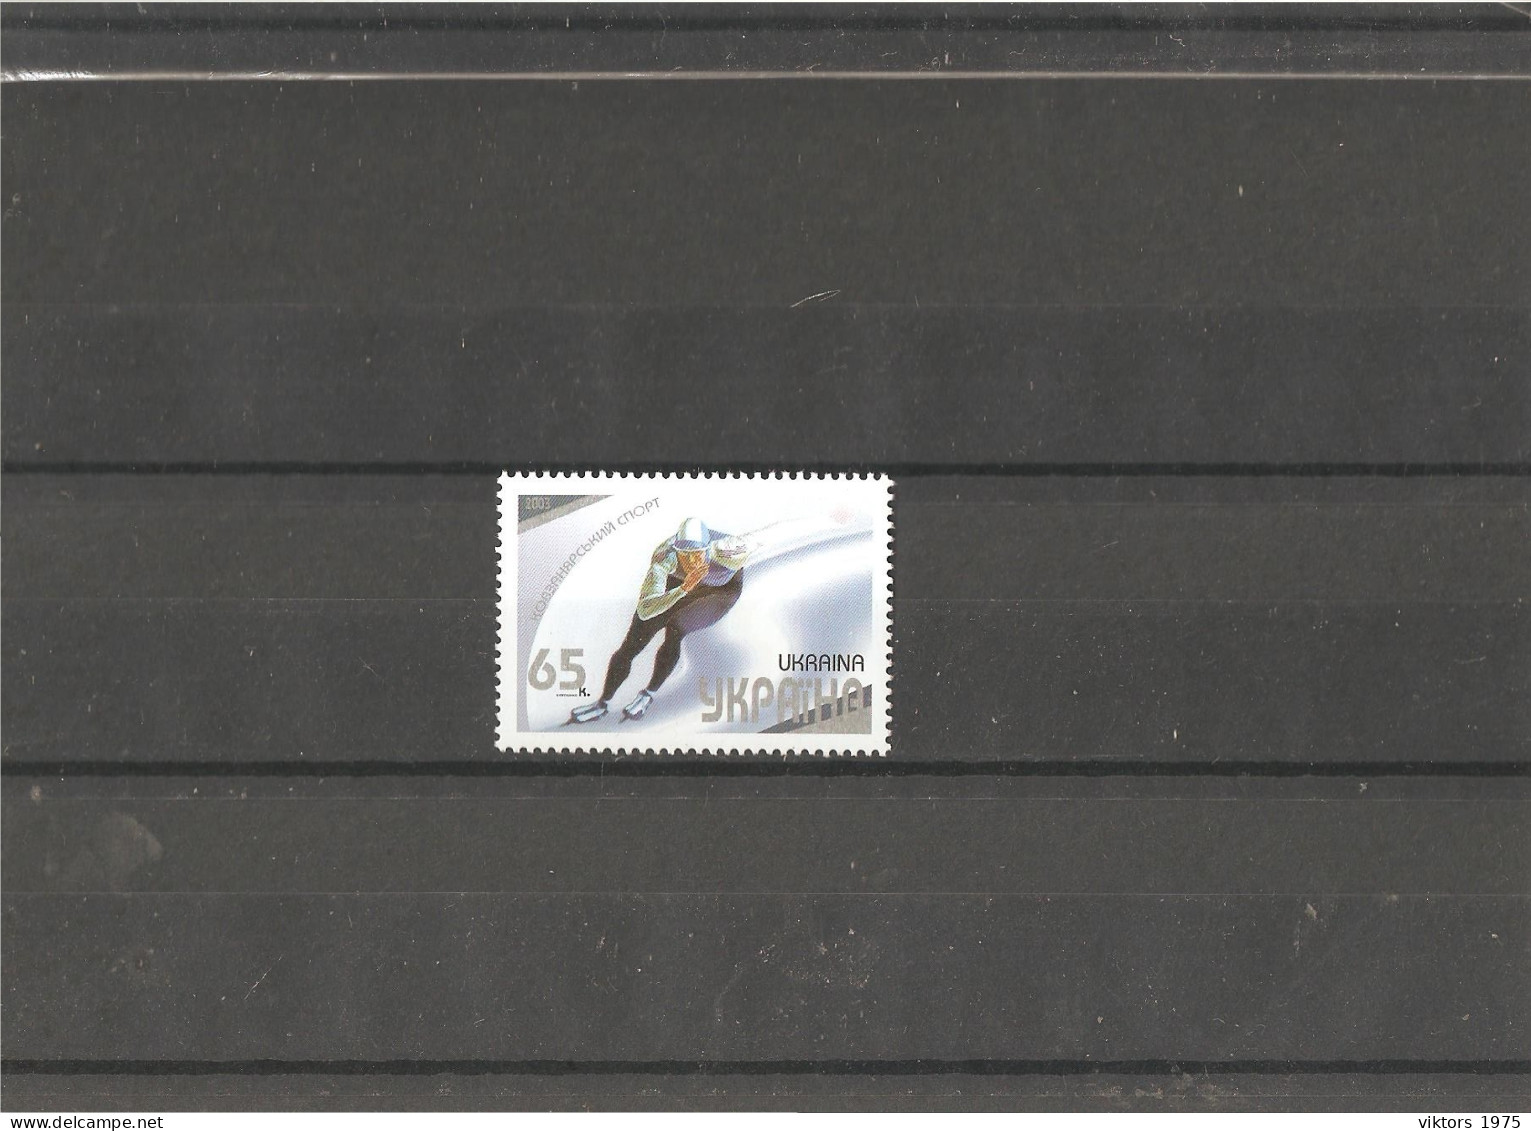 MNH Stamp Nr.551 In MICHEL Catalog - Ukraine